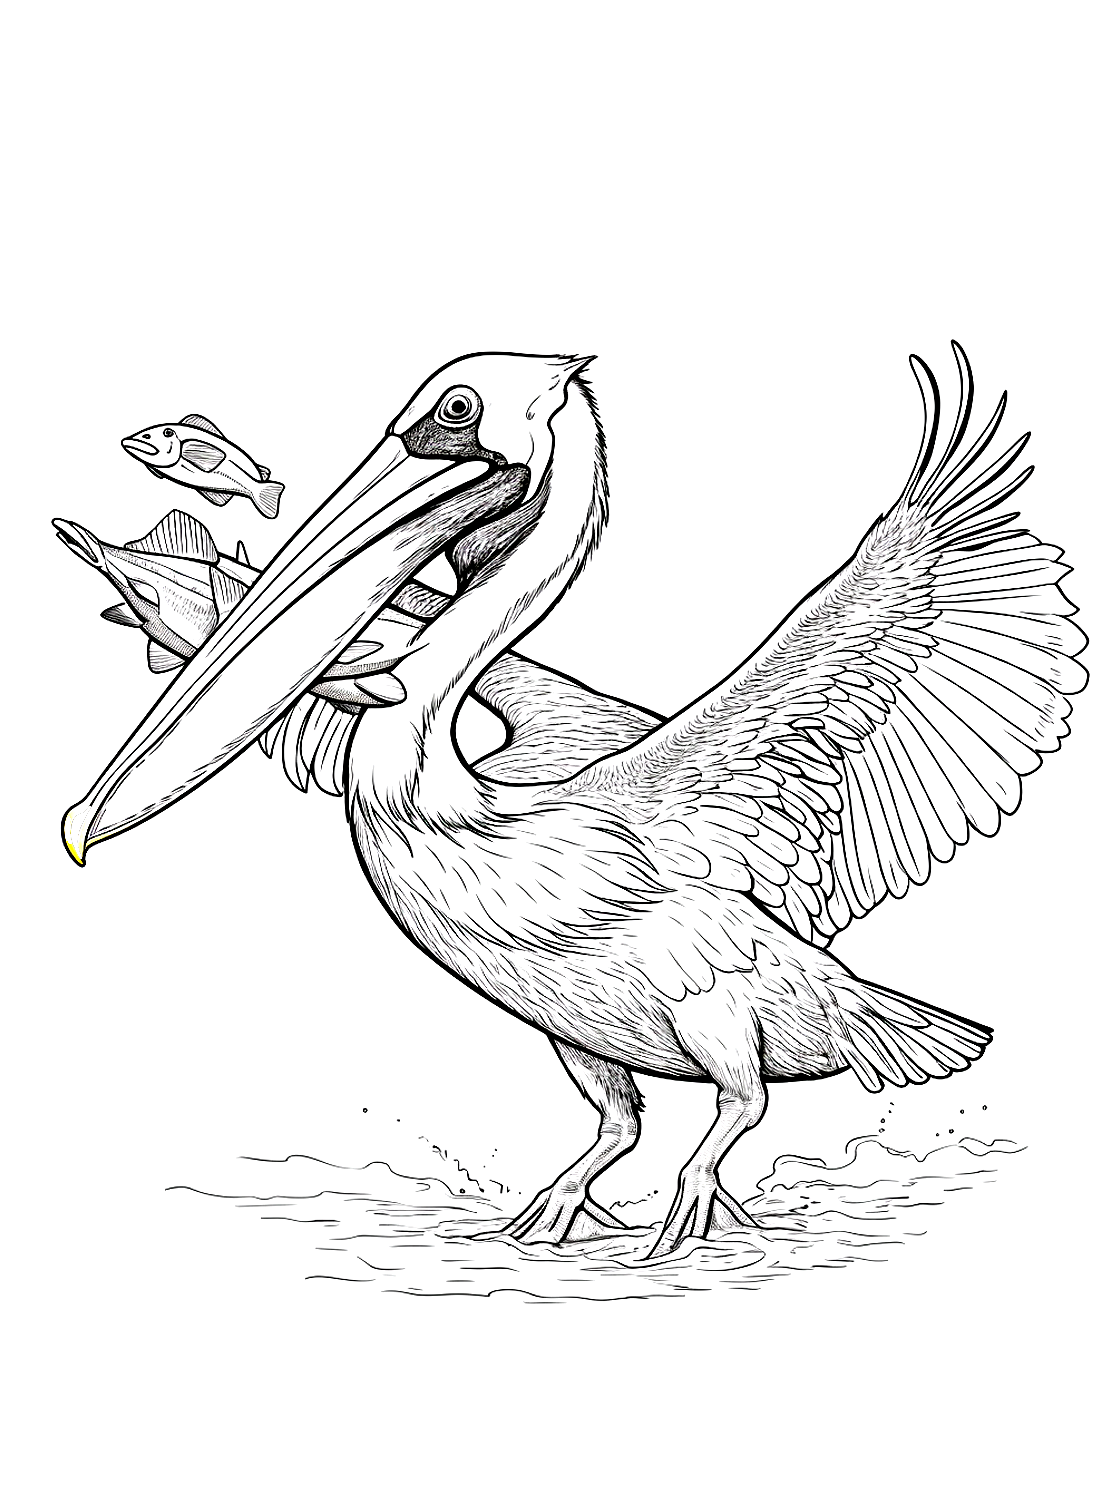 Пеликан ест рыбу из Пеликана